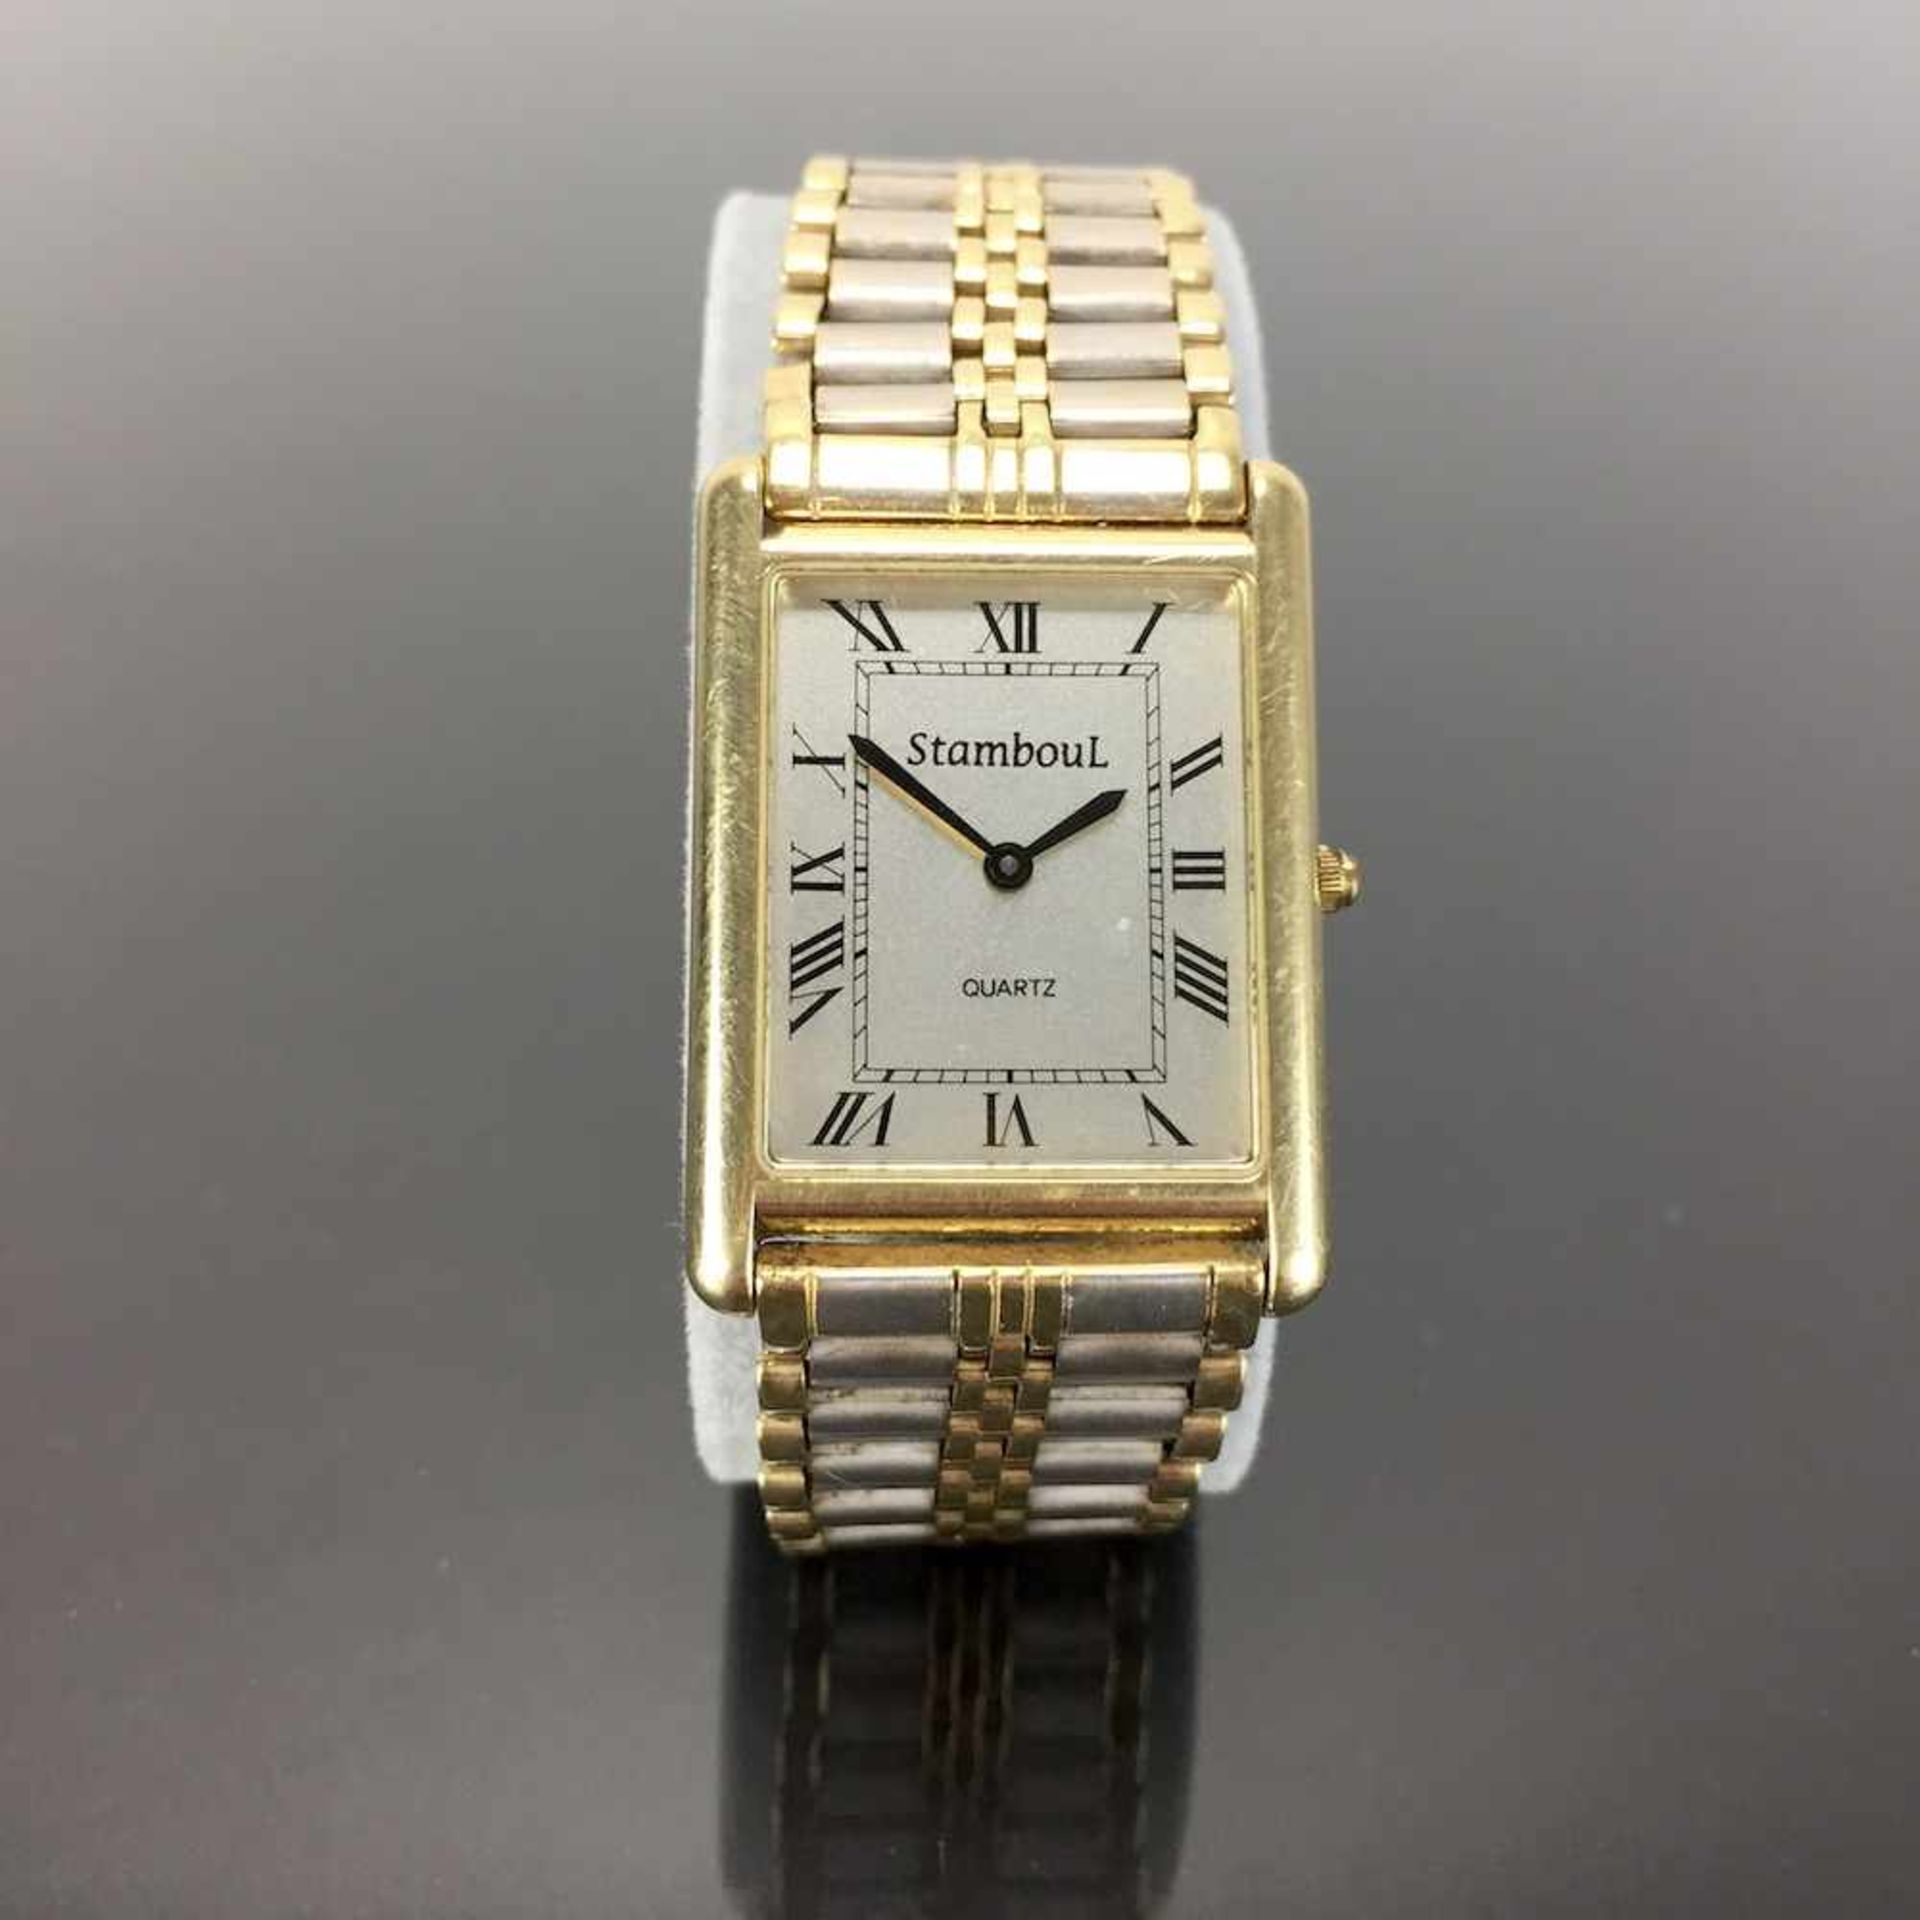 Schwere Herren Armbanduhr: Gold 585 / 14 K.Gemarkt "StambouL | Quartz". Rechteckiges Gehäuse aus